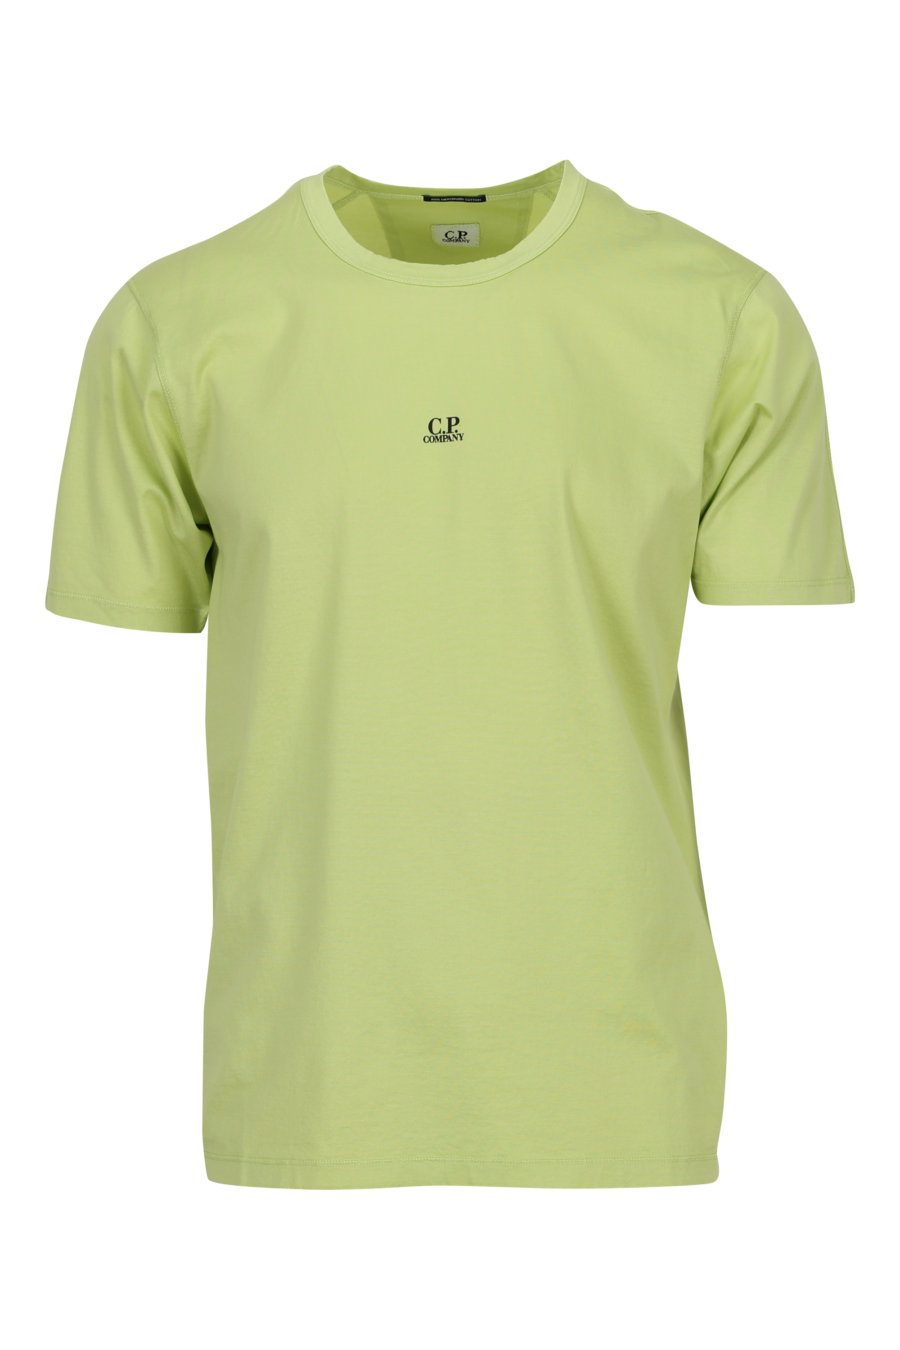 Camiseta verde claro con minilogo "cp" centrado - 7620943760507